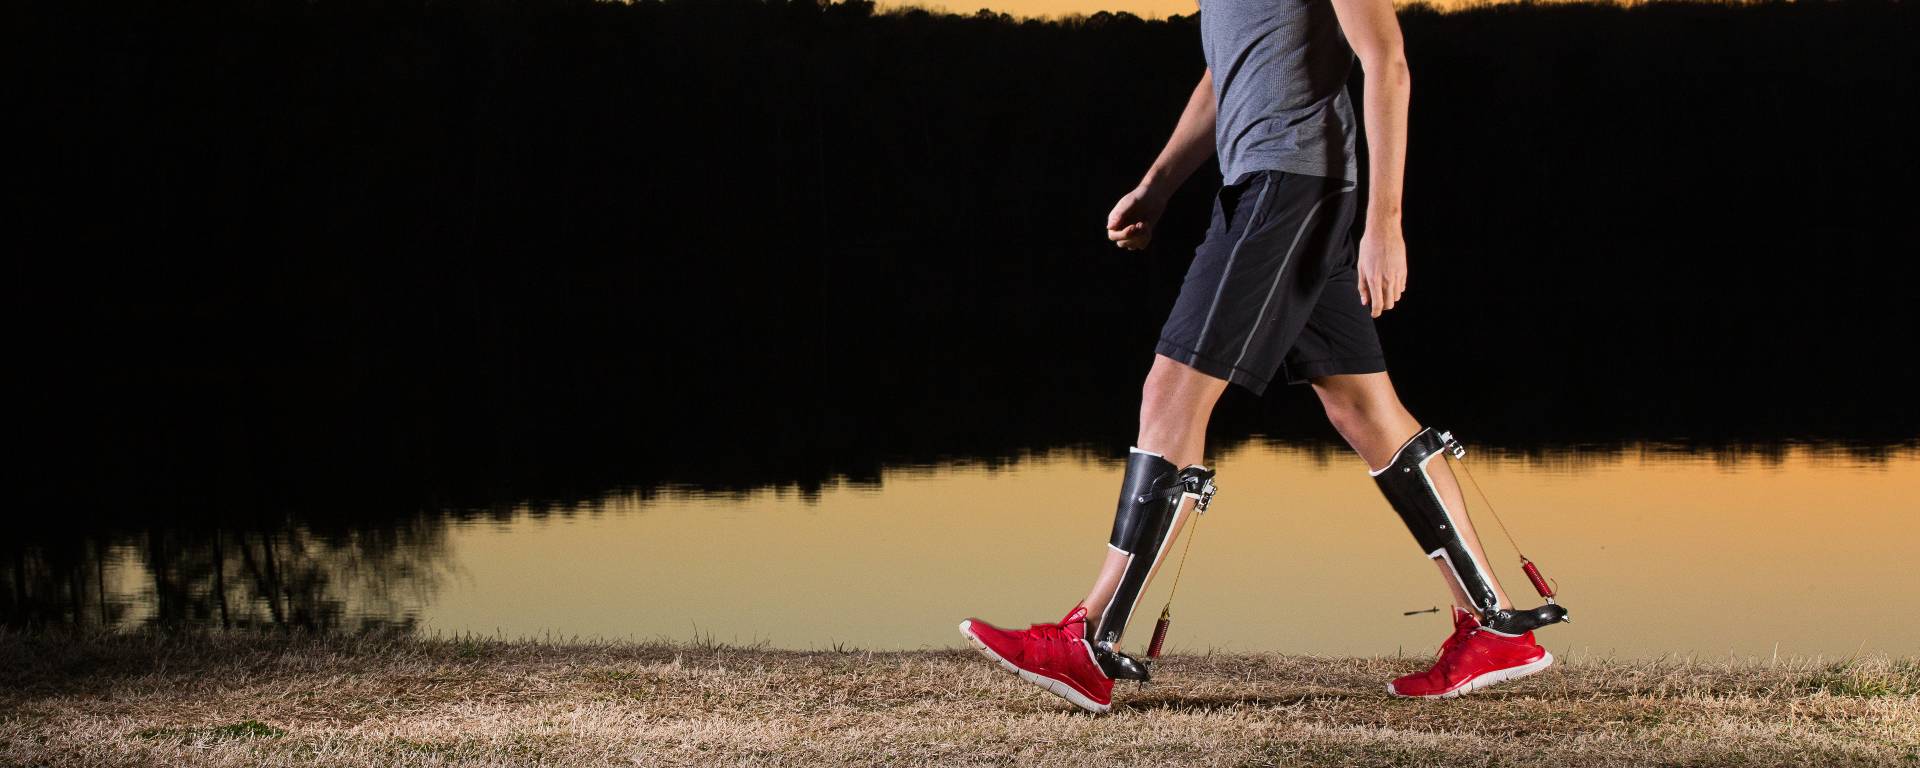 Quotidien assistée par exosquelettes : marcher mieux, plus loin avec moins de fatigue ?